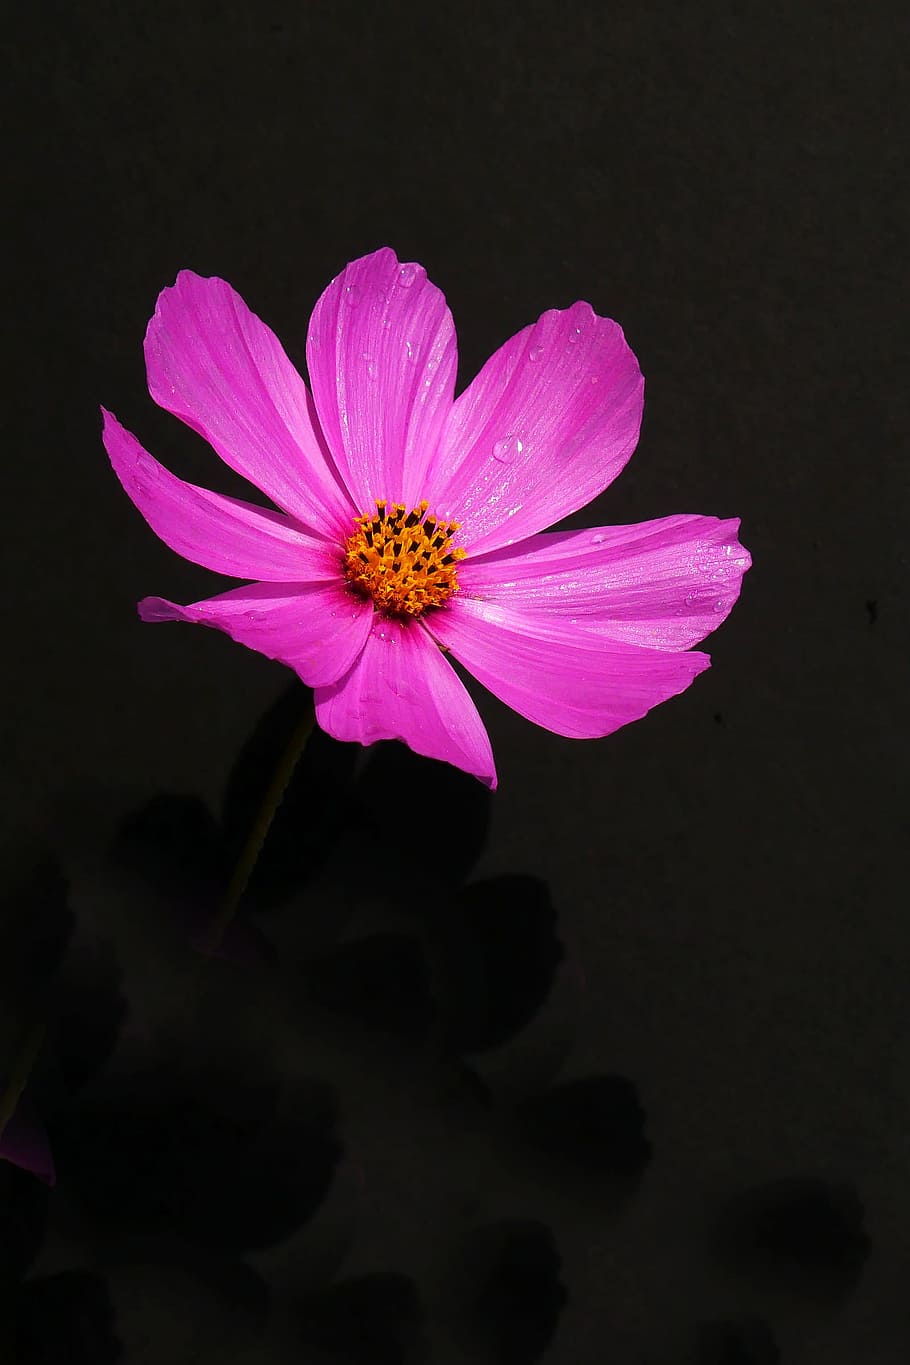 розовый, цветок космоса, крупным планом., космическое растение, розовые цветы, изображения цветов, фото цветов, красивые изображения цветов, цветок, цветущее растение